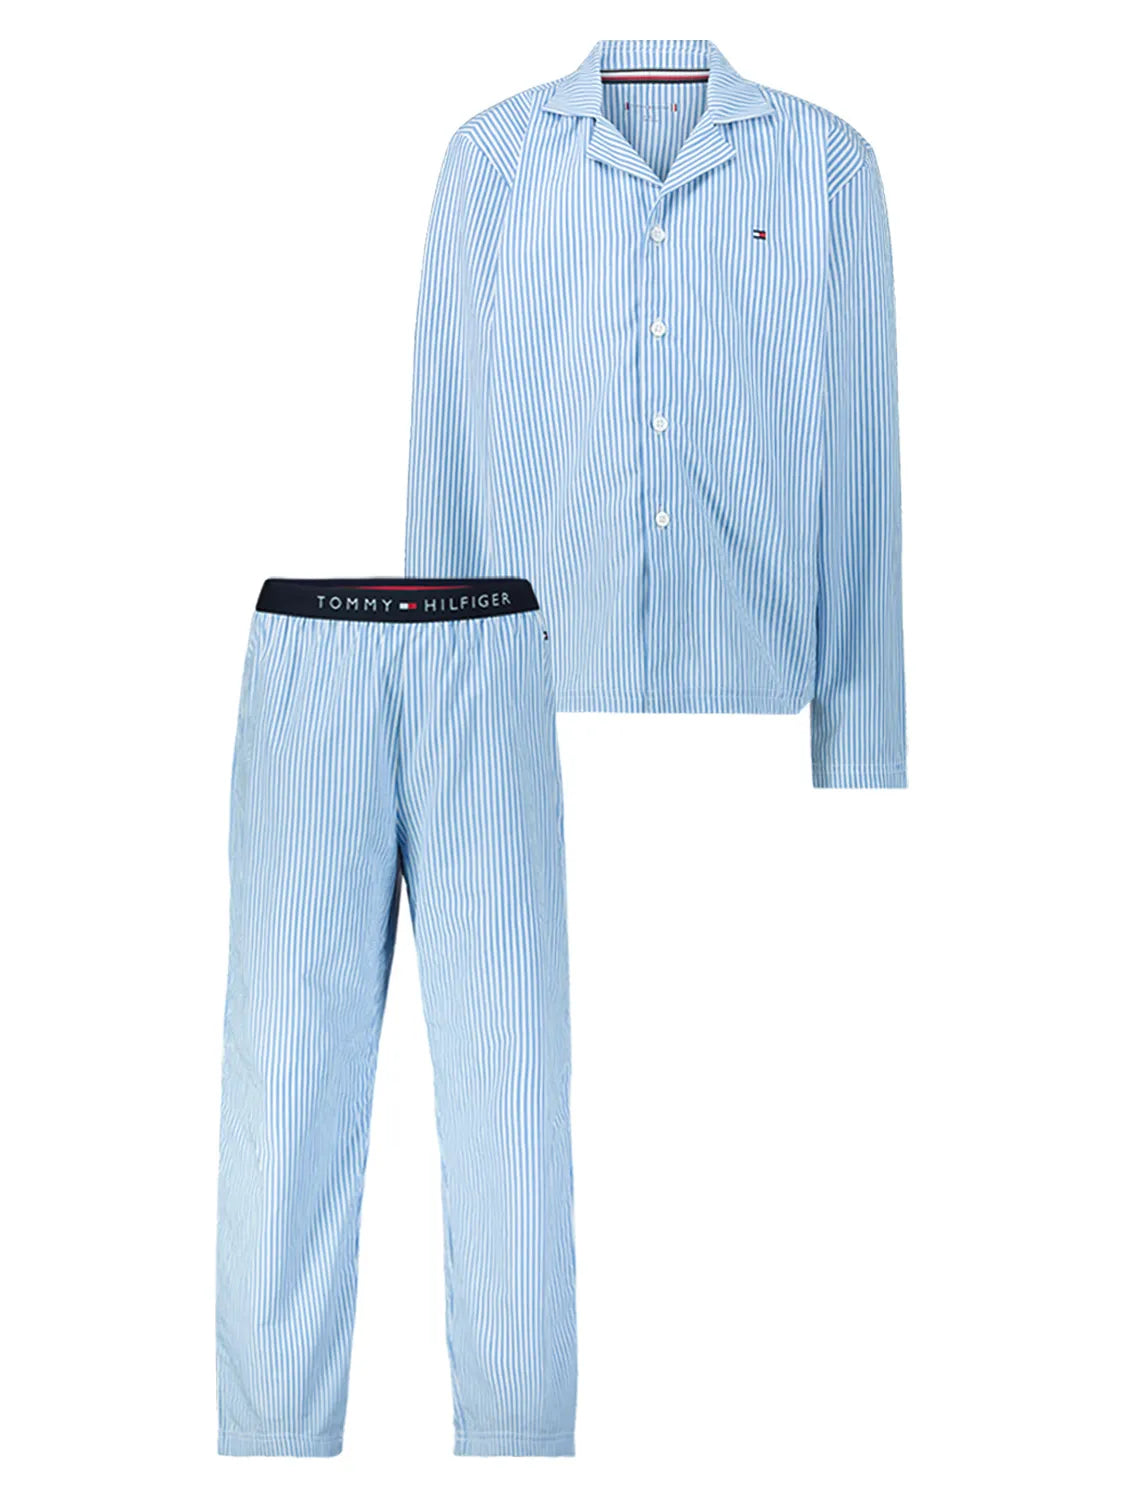 Tommy Hilfiger men’s pajama set